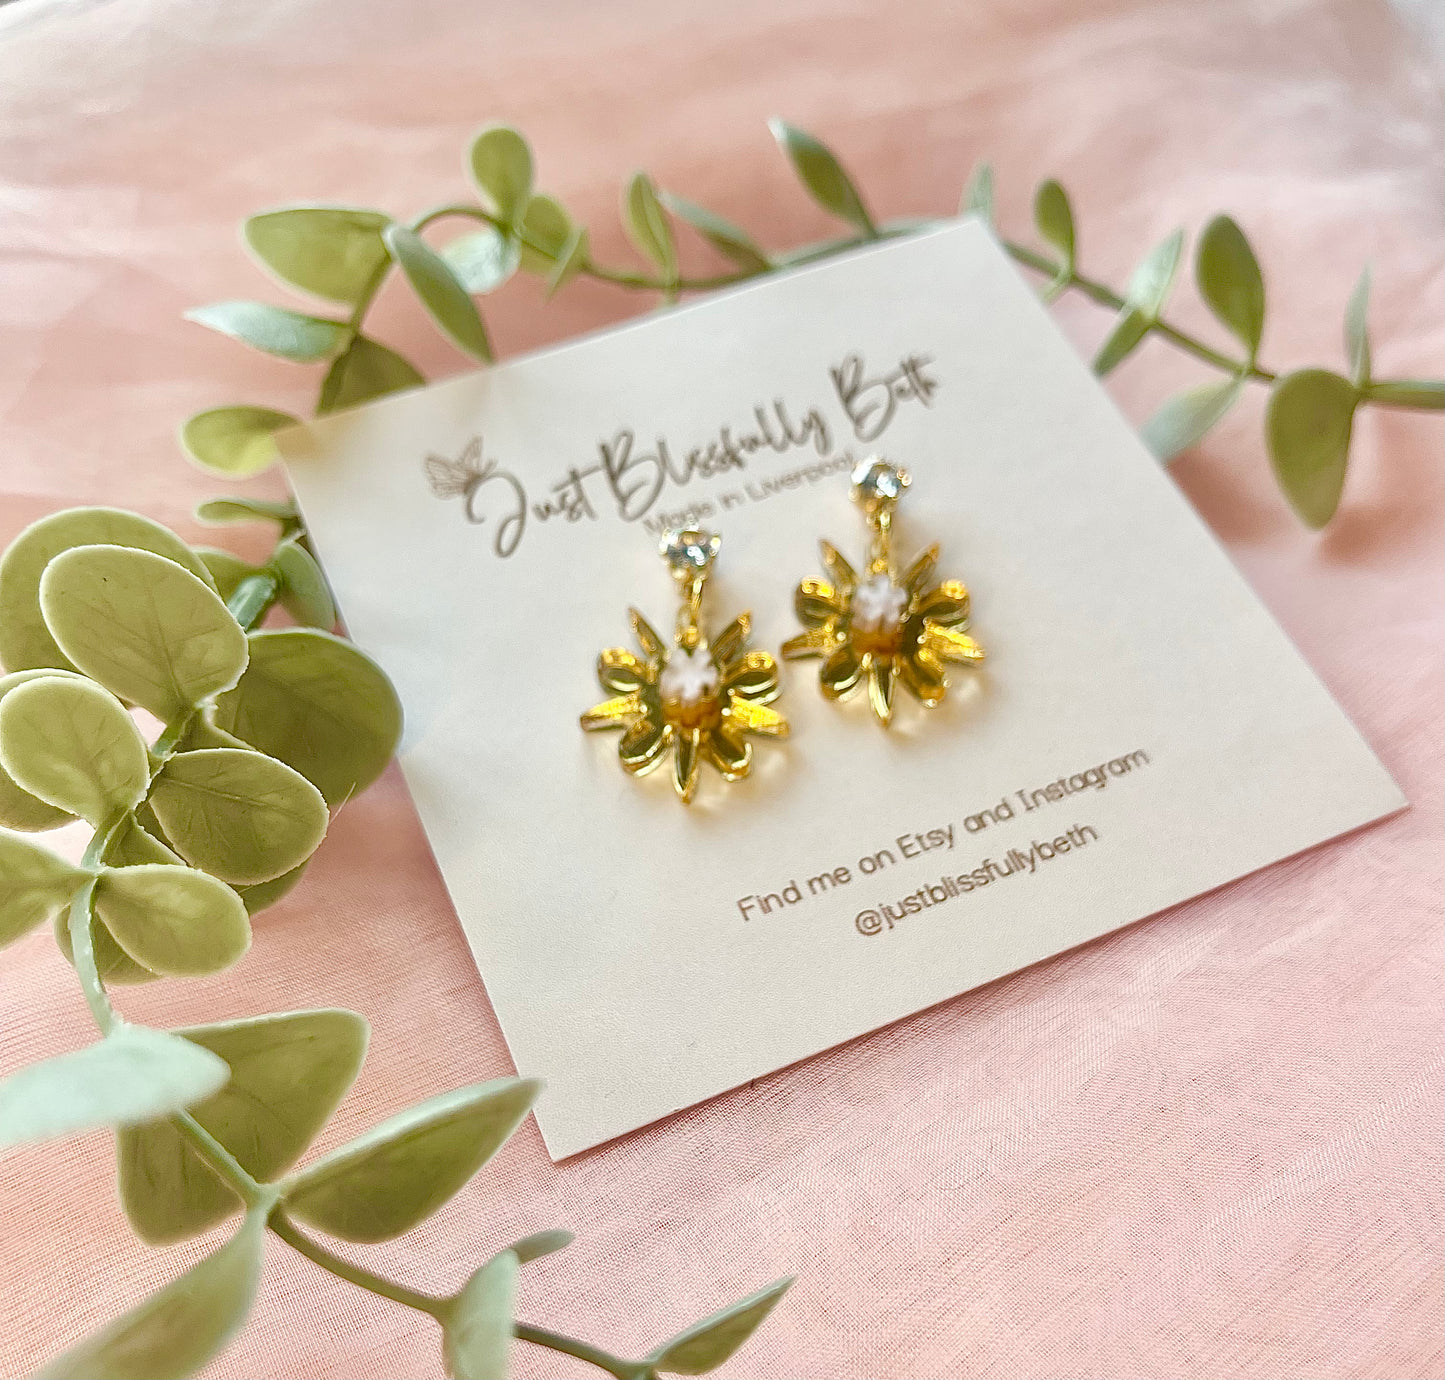 Floral fancies earrings - Gold